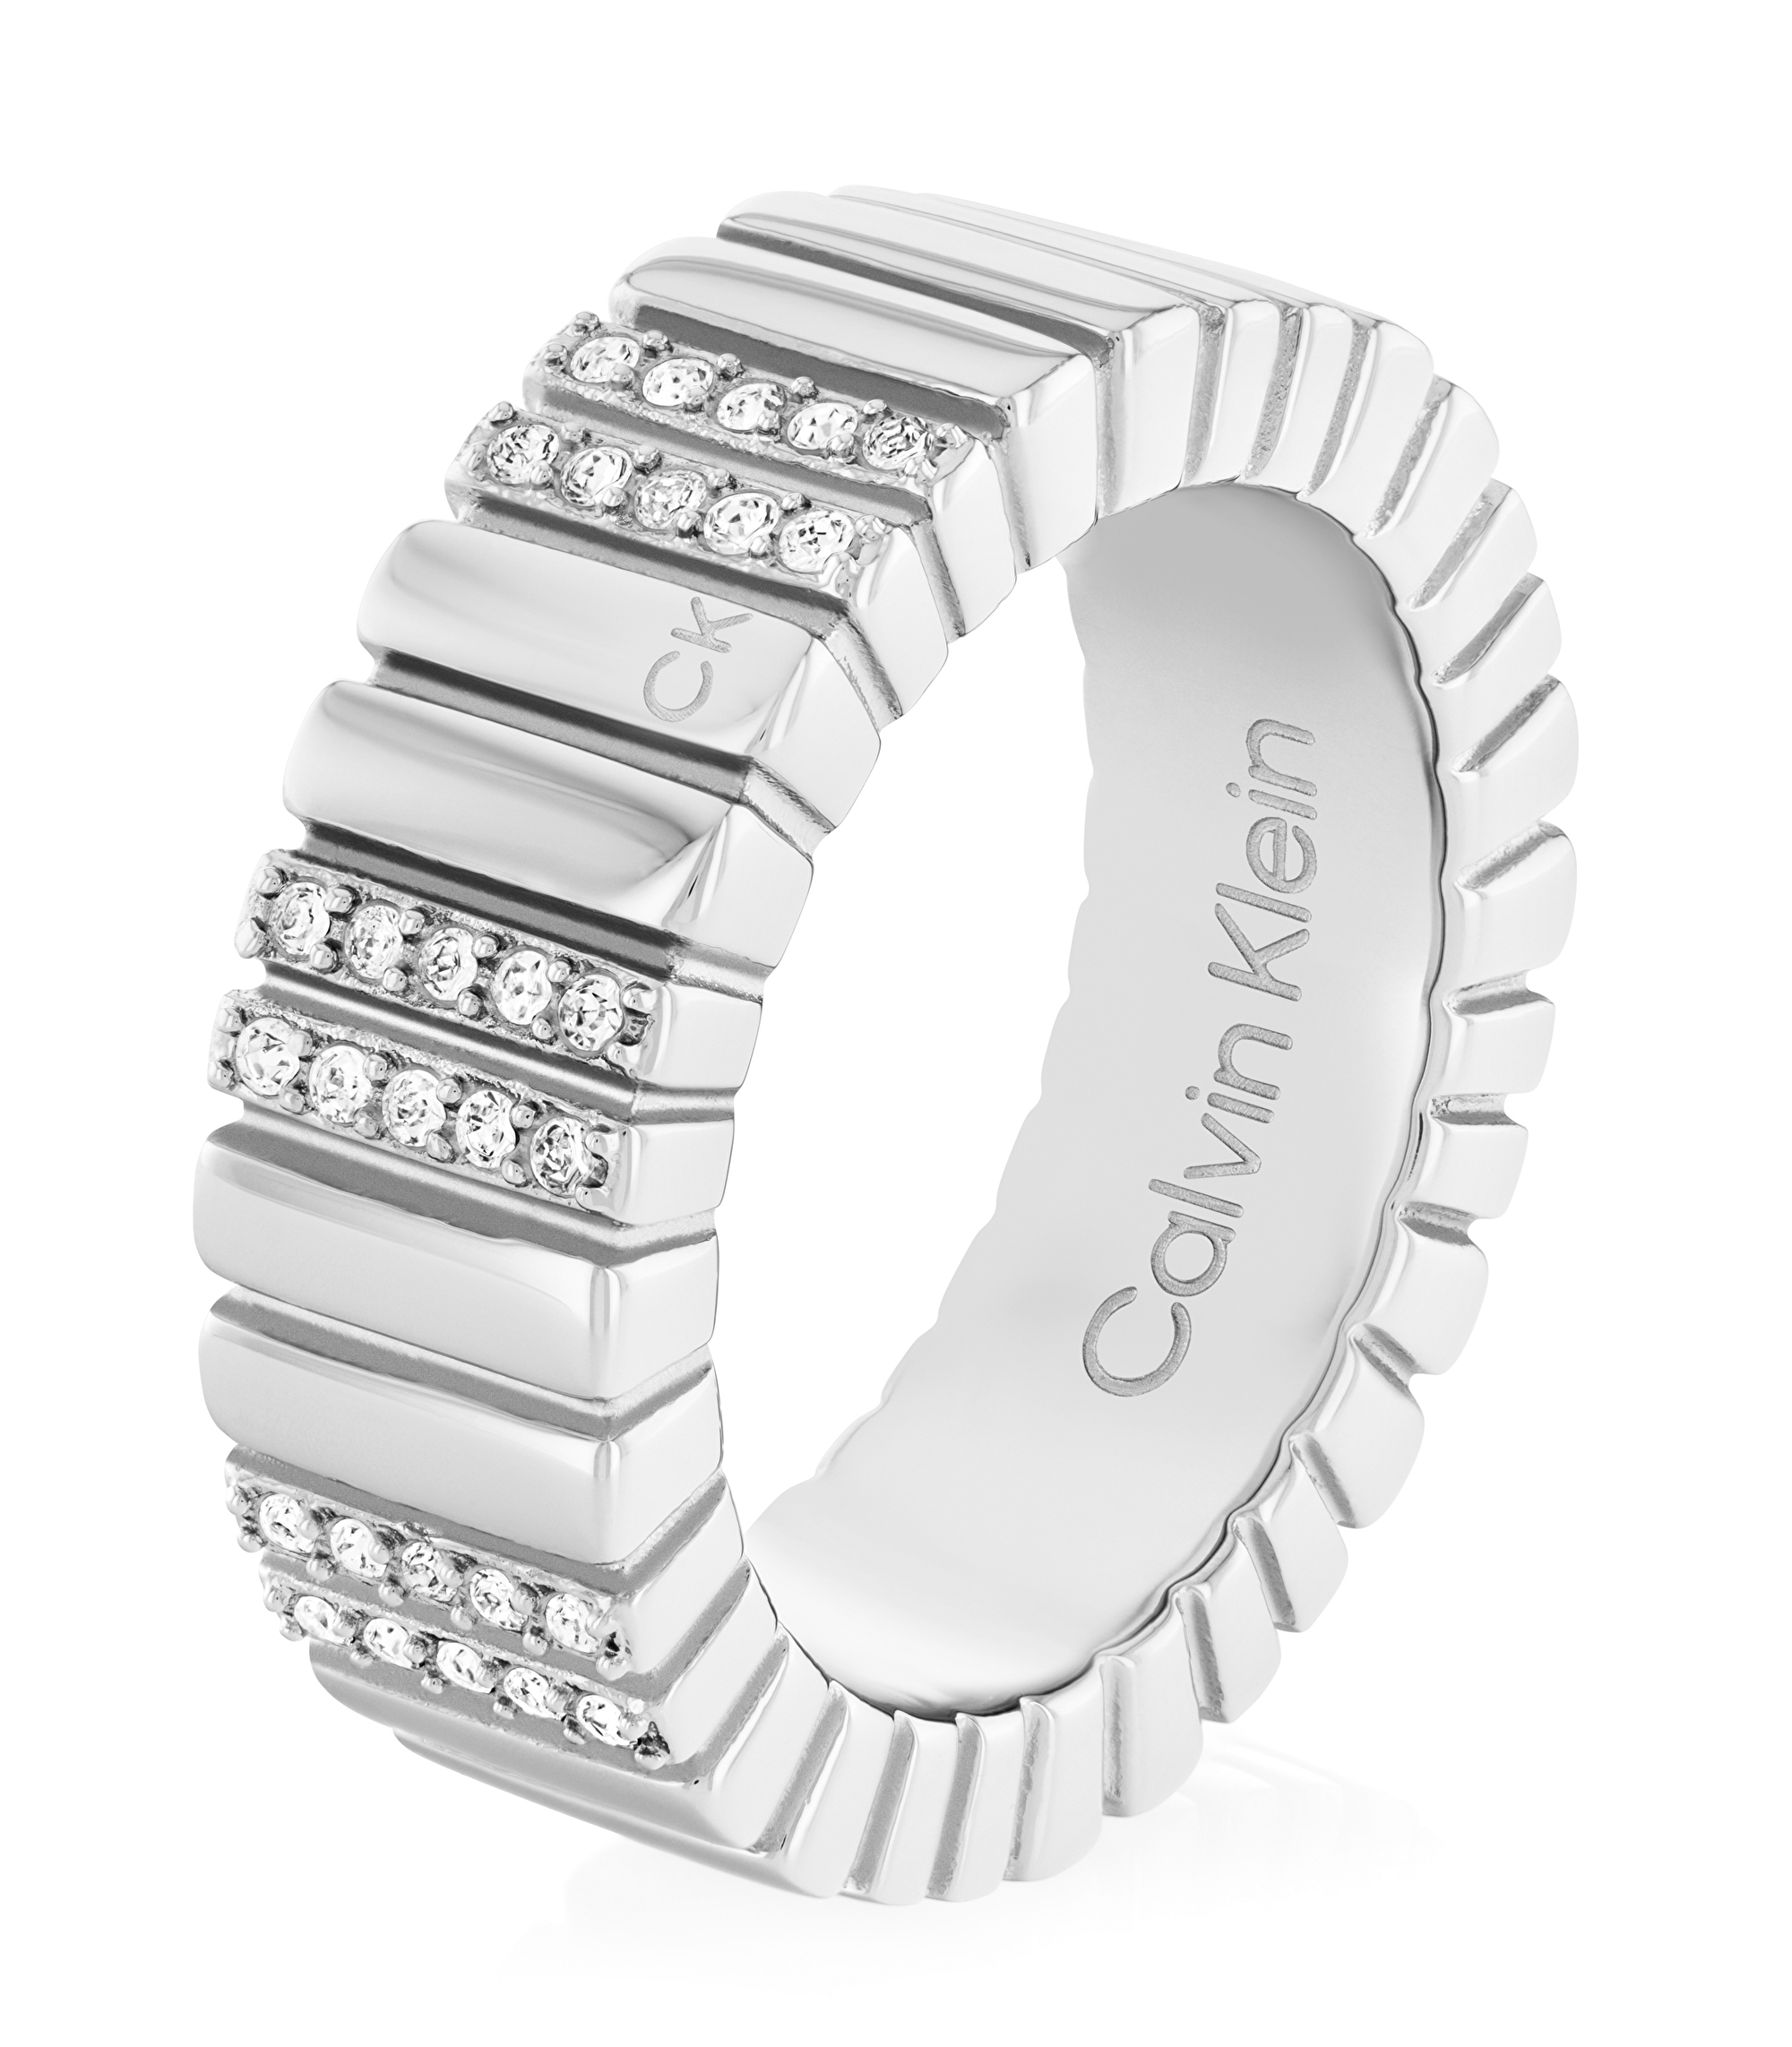 Calvin Klein Módny oceľový prsteň s kryštálmi Minimalistic Metal 35000440 56 mm